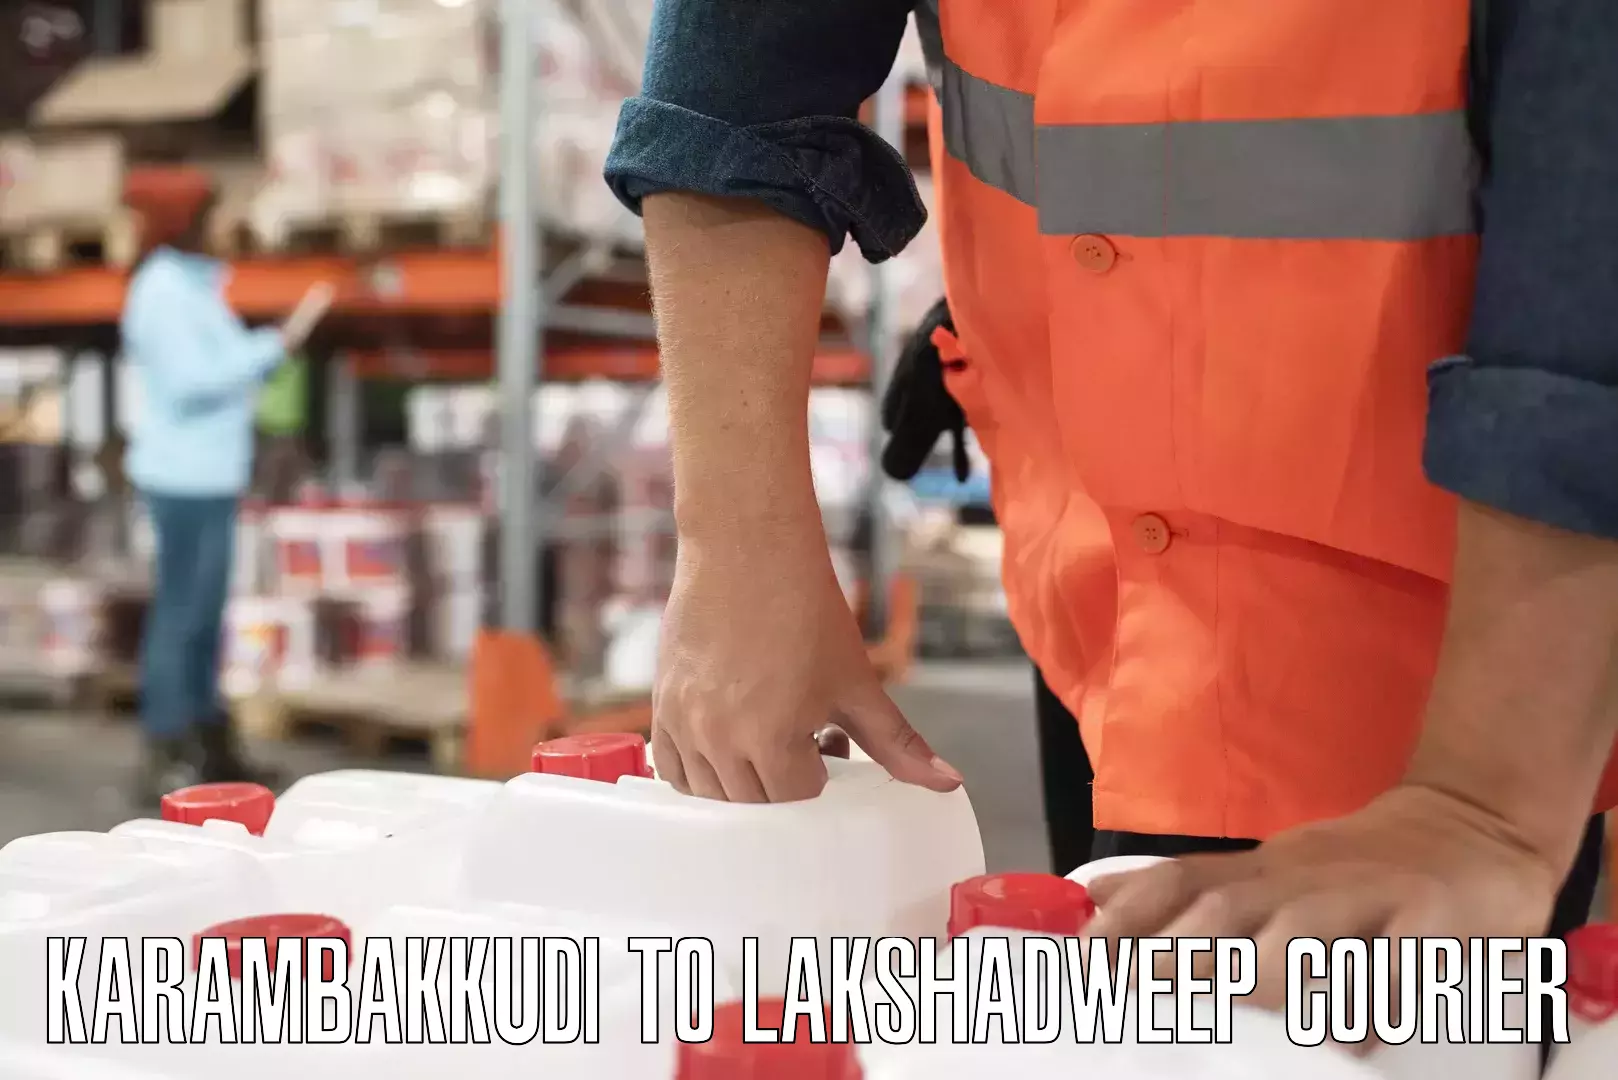 Reliable package handling Karambakkudi to Lakshadweep